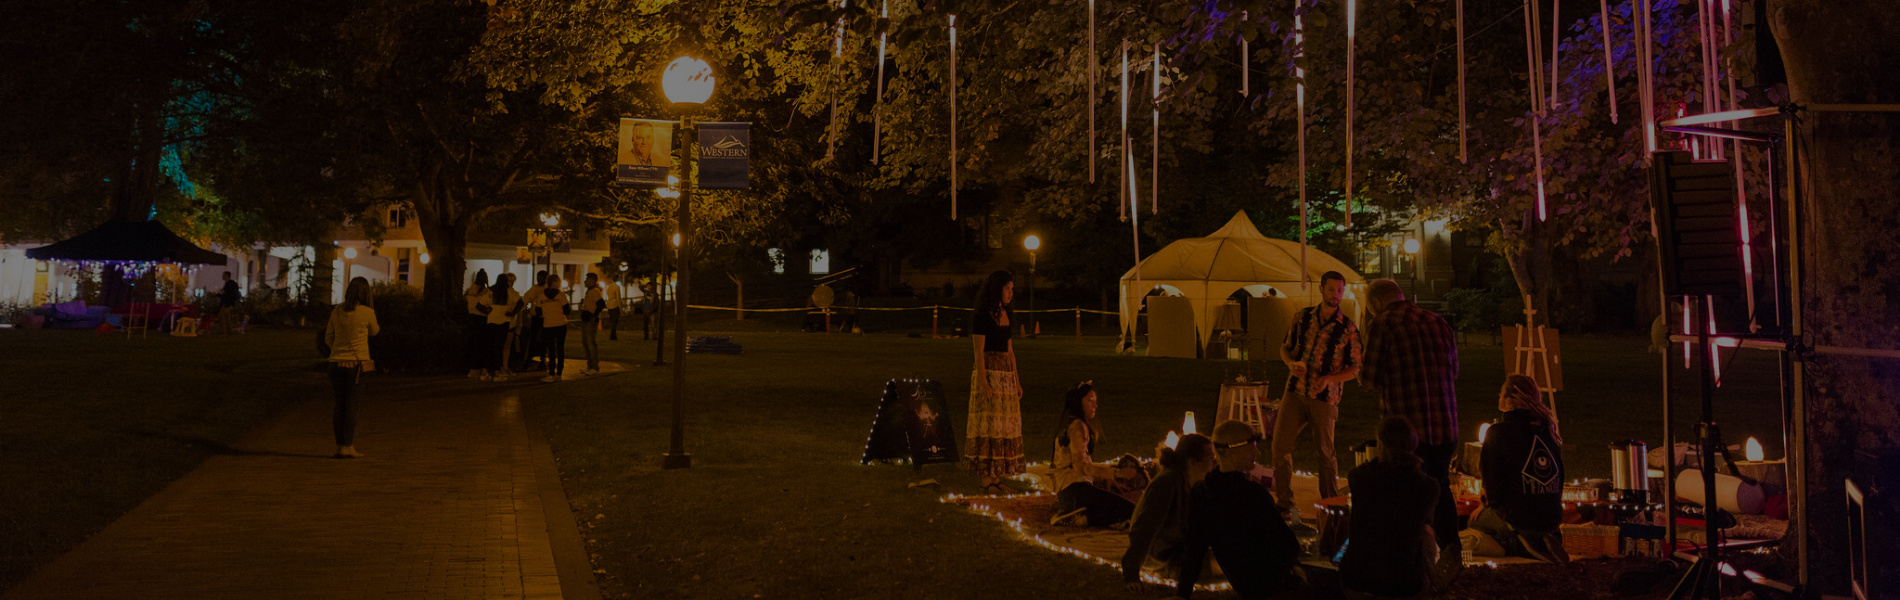 Image of a Night Market at Western Washington University